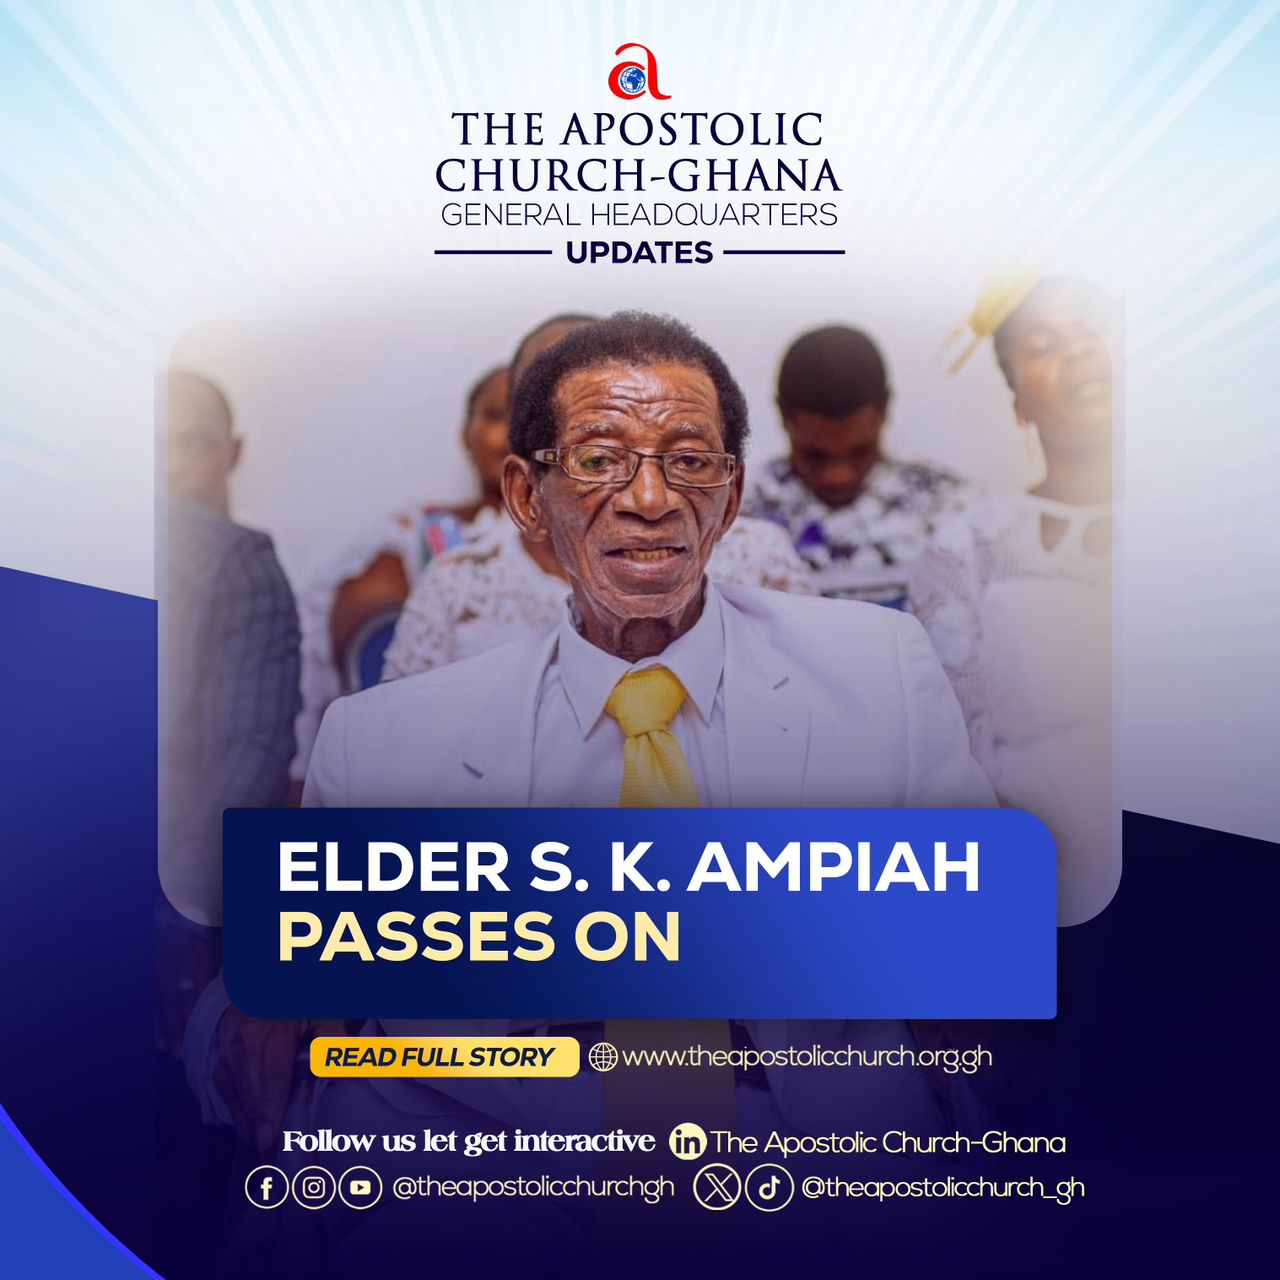 Renowned Ghanaian composer, Elder S.K. Ampiah dies aged 99